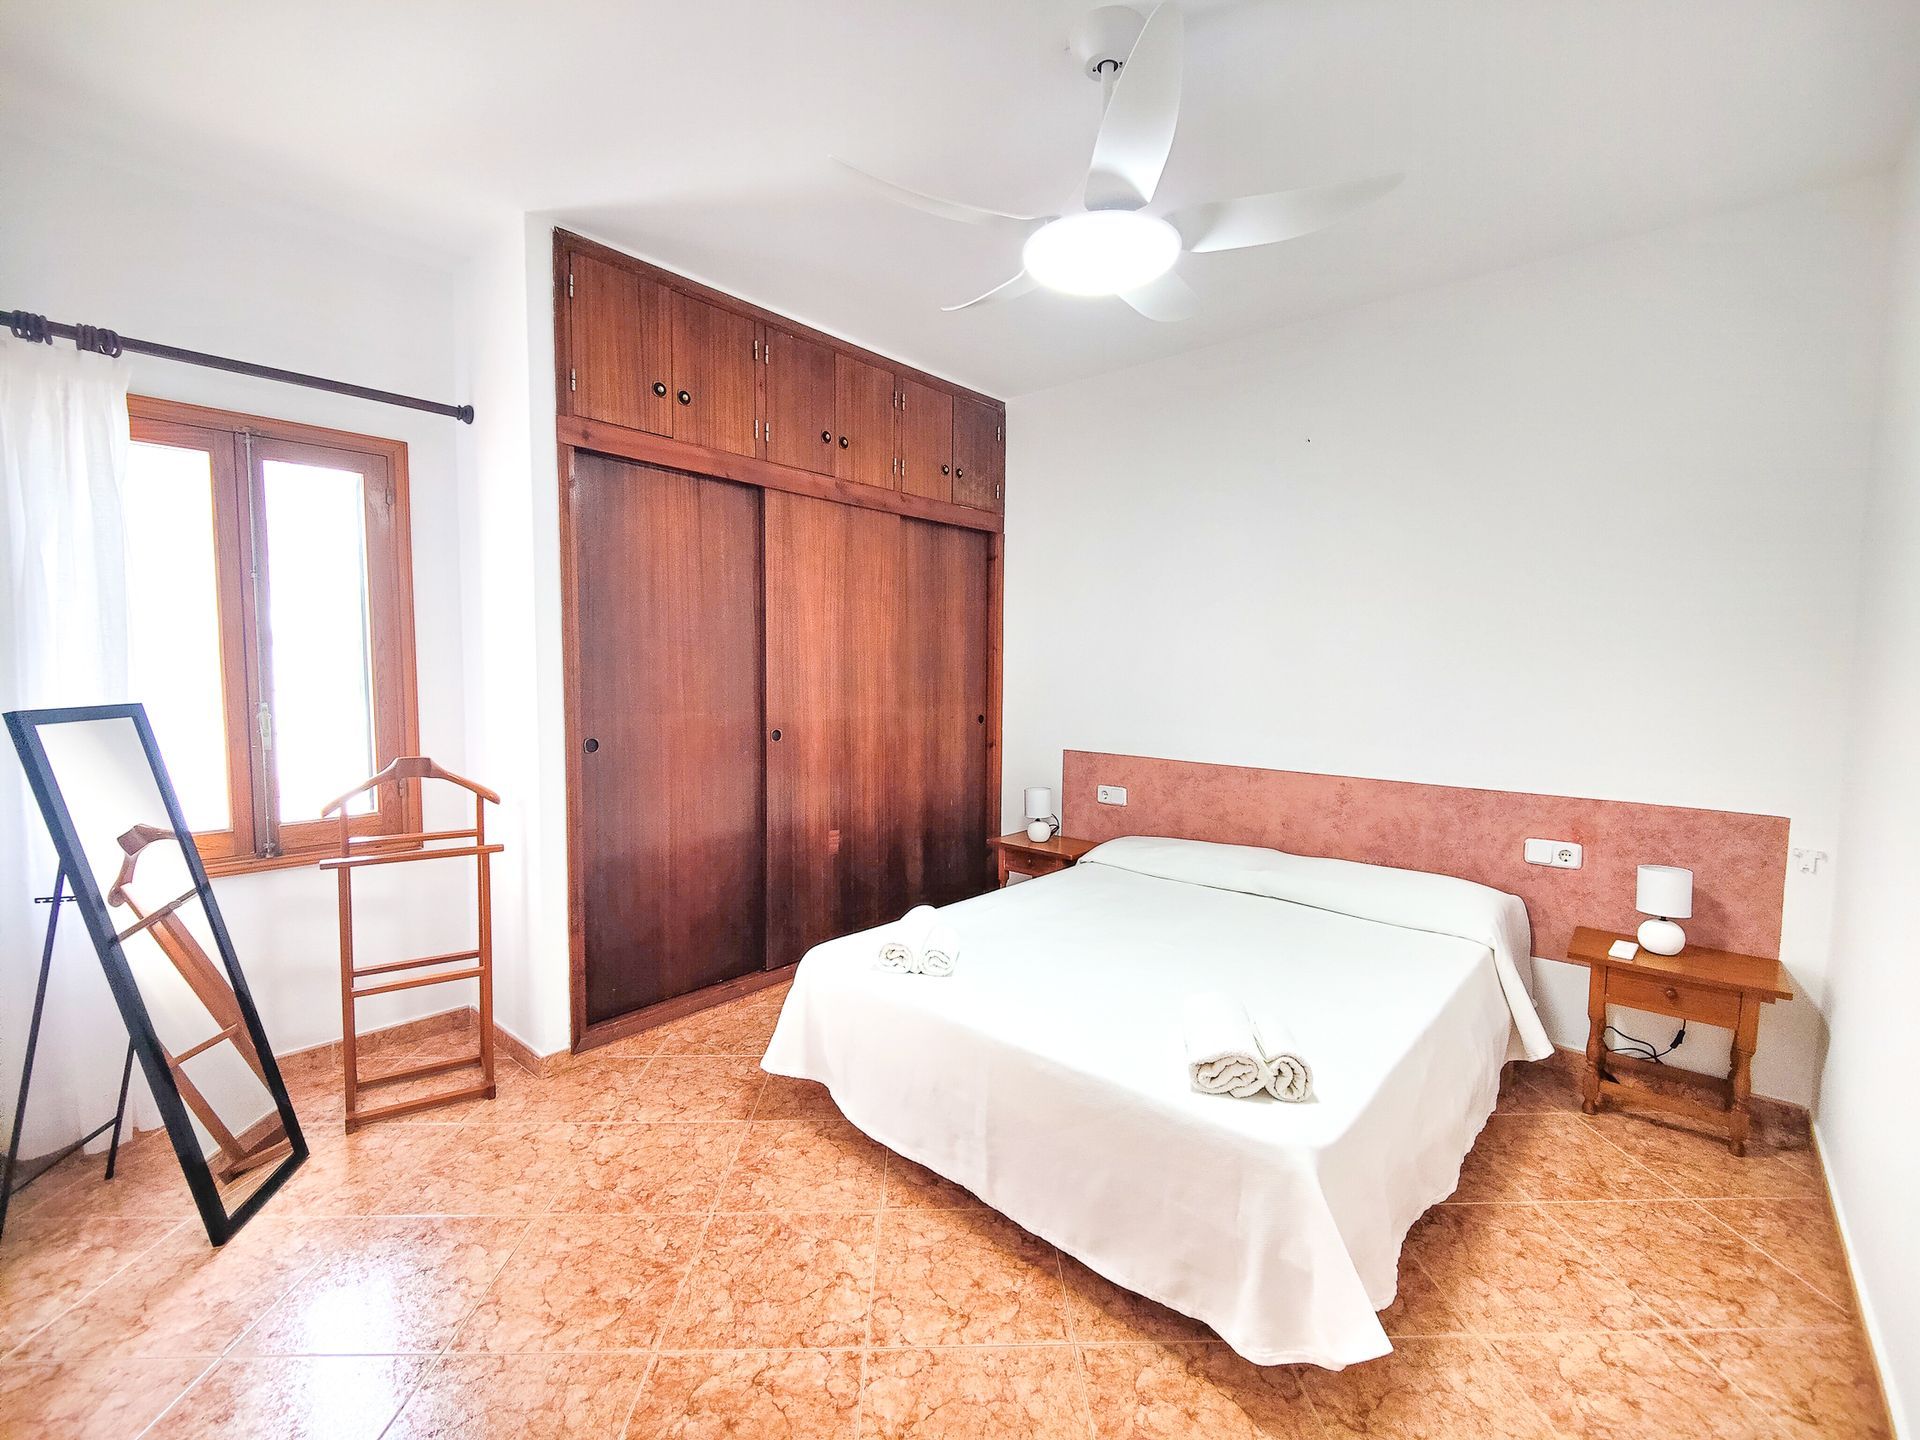 Foto del dormitorio de matrimonio de Villa Mascaró, casa de alquiler de vacaciones en Menorca. 